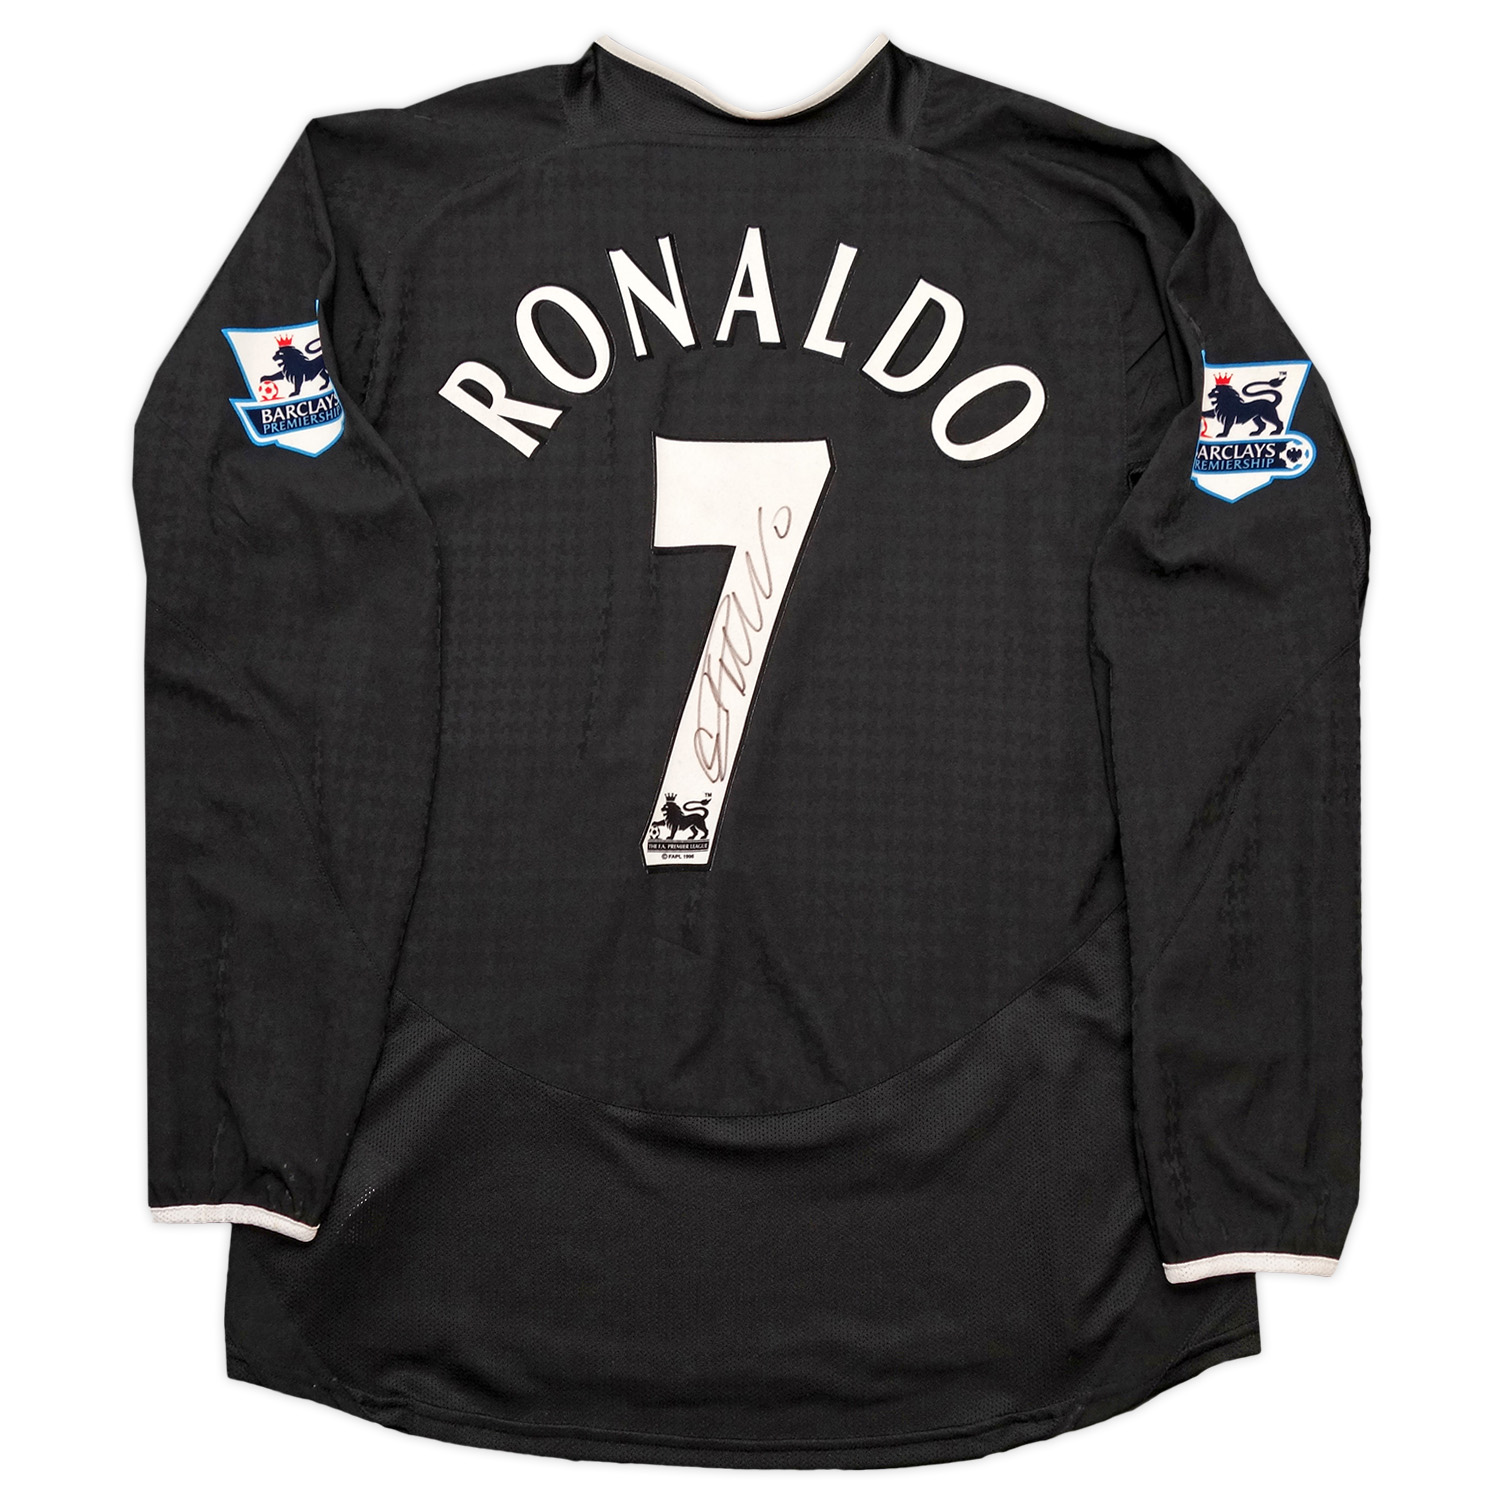 クリスティアーノ・ロナウド直筆サイン入り選手支給マンチェスターU04/05アウェイユニフォーム STAND UP SPEAK UP /  Cristiano Ronaldo signed Manchester United 04/05 player issued away shirt  STAND UP 